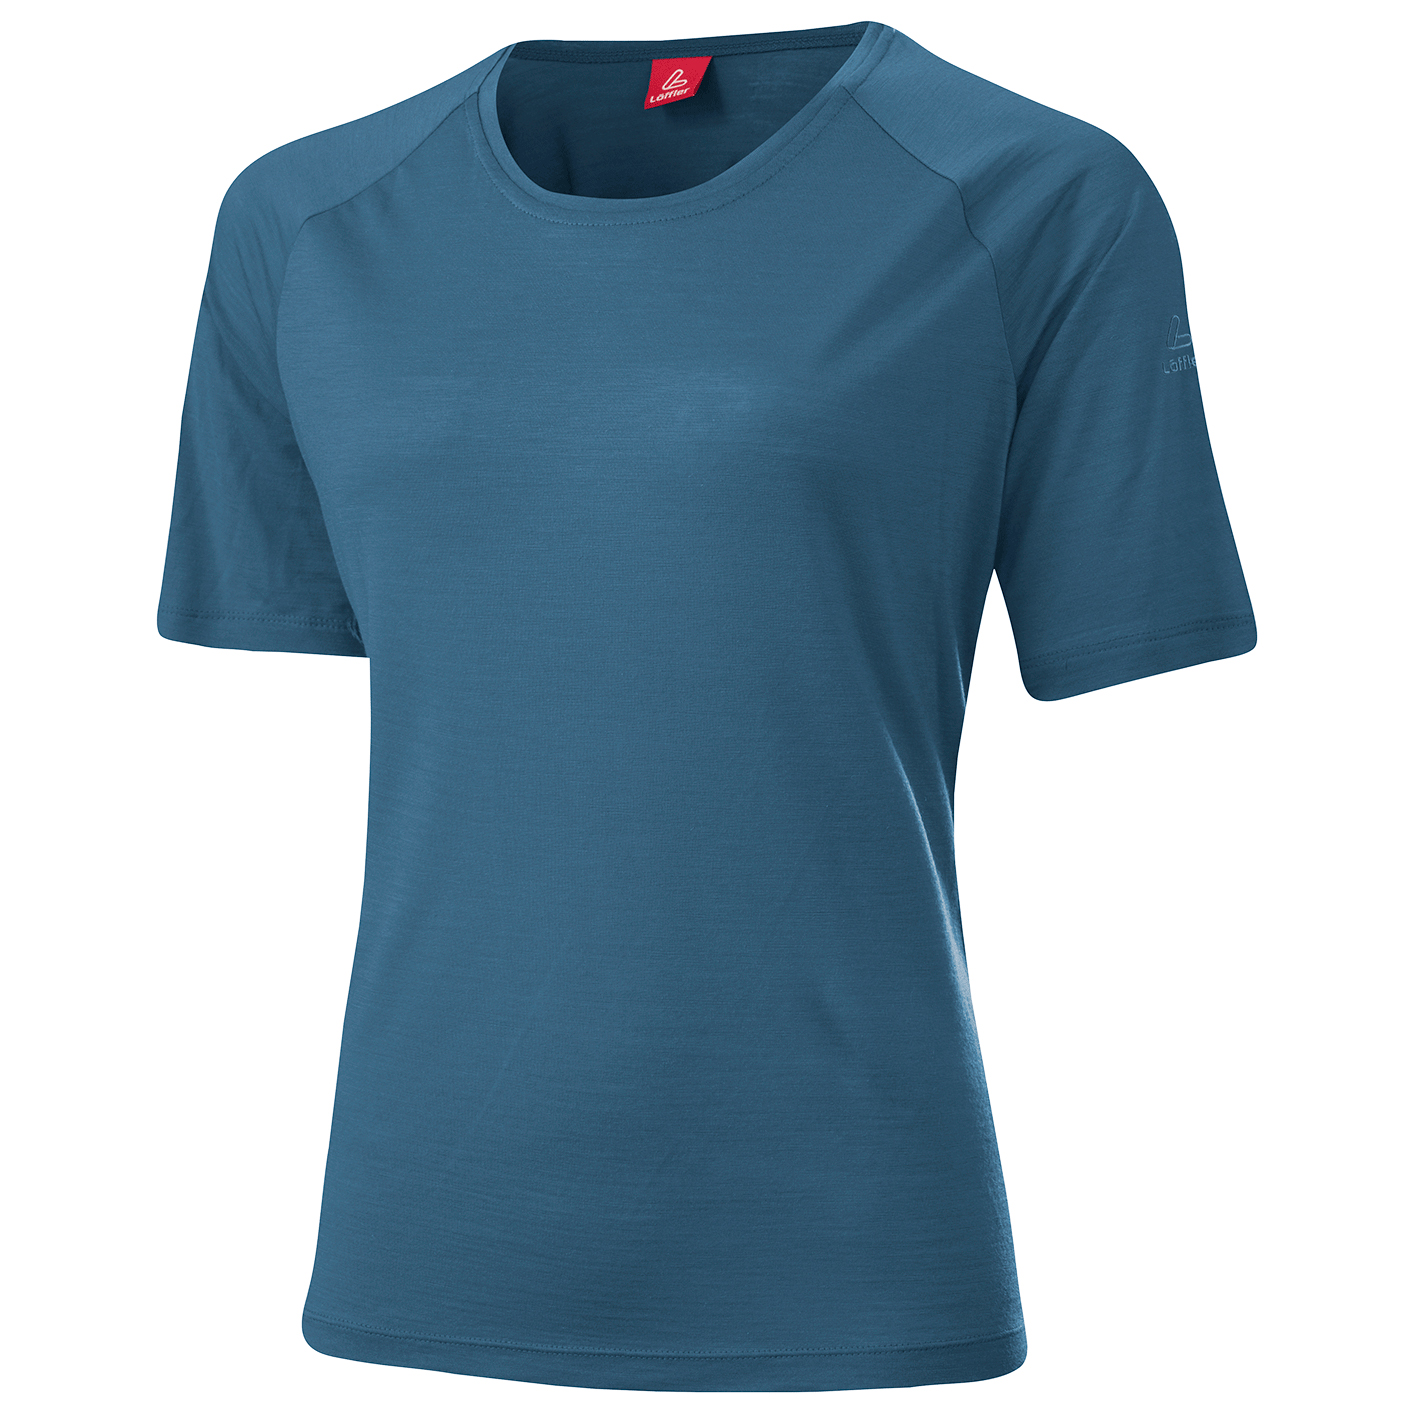 Рубашка из мериноса Löffler Women's Shirt Merino Tencel Comfort Fit, цвет Vintigo